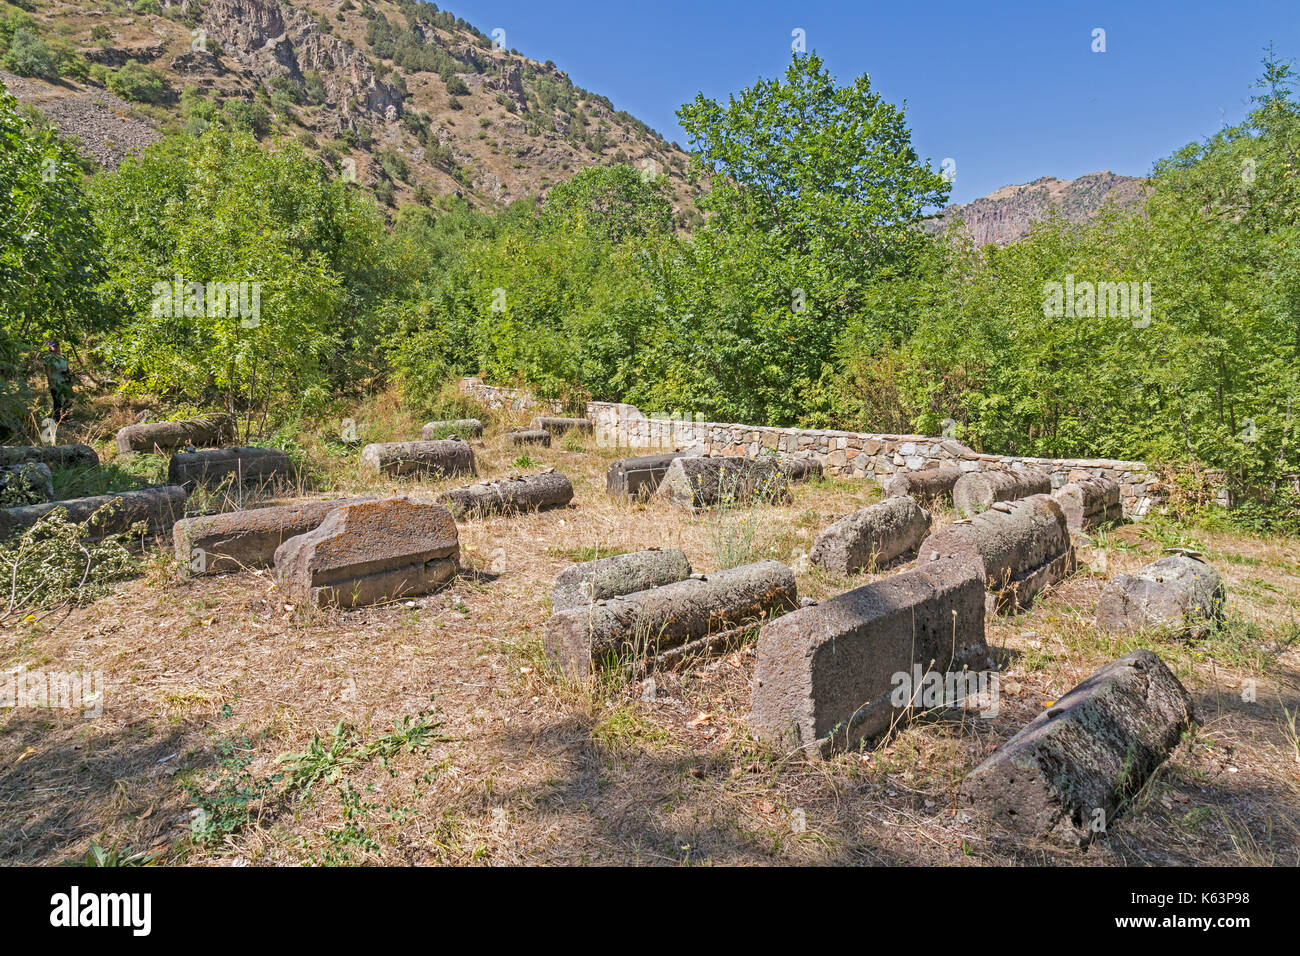 Anciennes tombes au cimetière juif de Yeghegis en Arménie. À partir de la 13e et 14e siècle. Inscriptions en hébreu sont clairement visibles sur certaines tombes. Banque D'Images